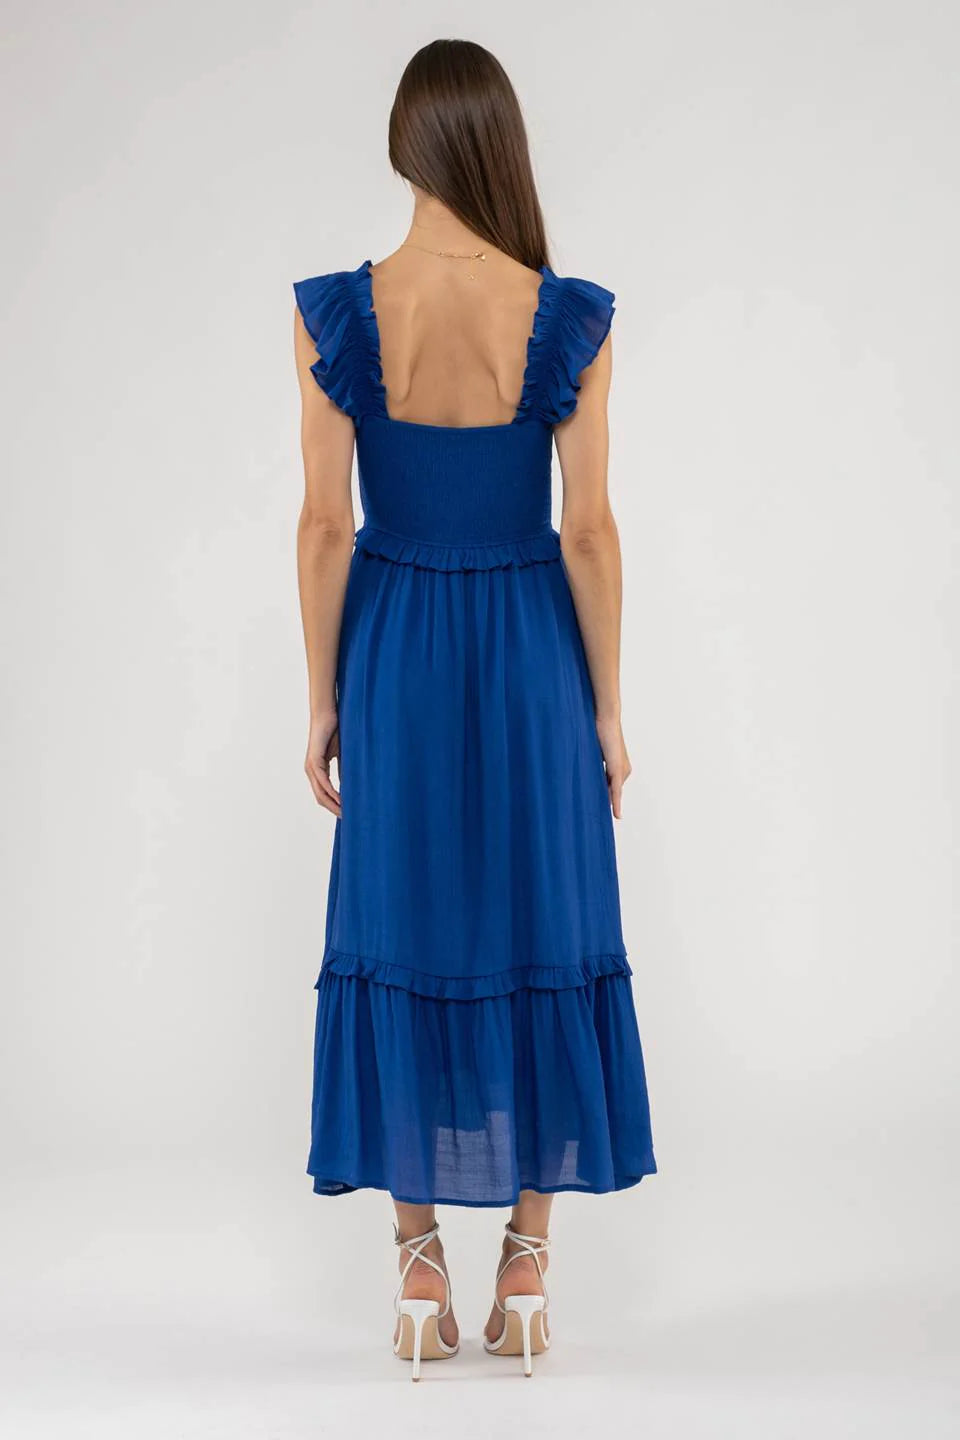 Fiona Square Neck Smocked Midi Dress in Royal Blue